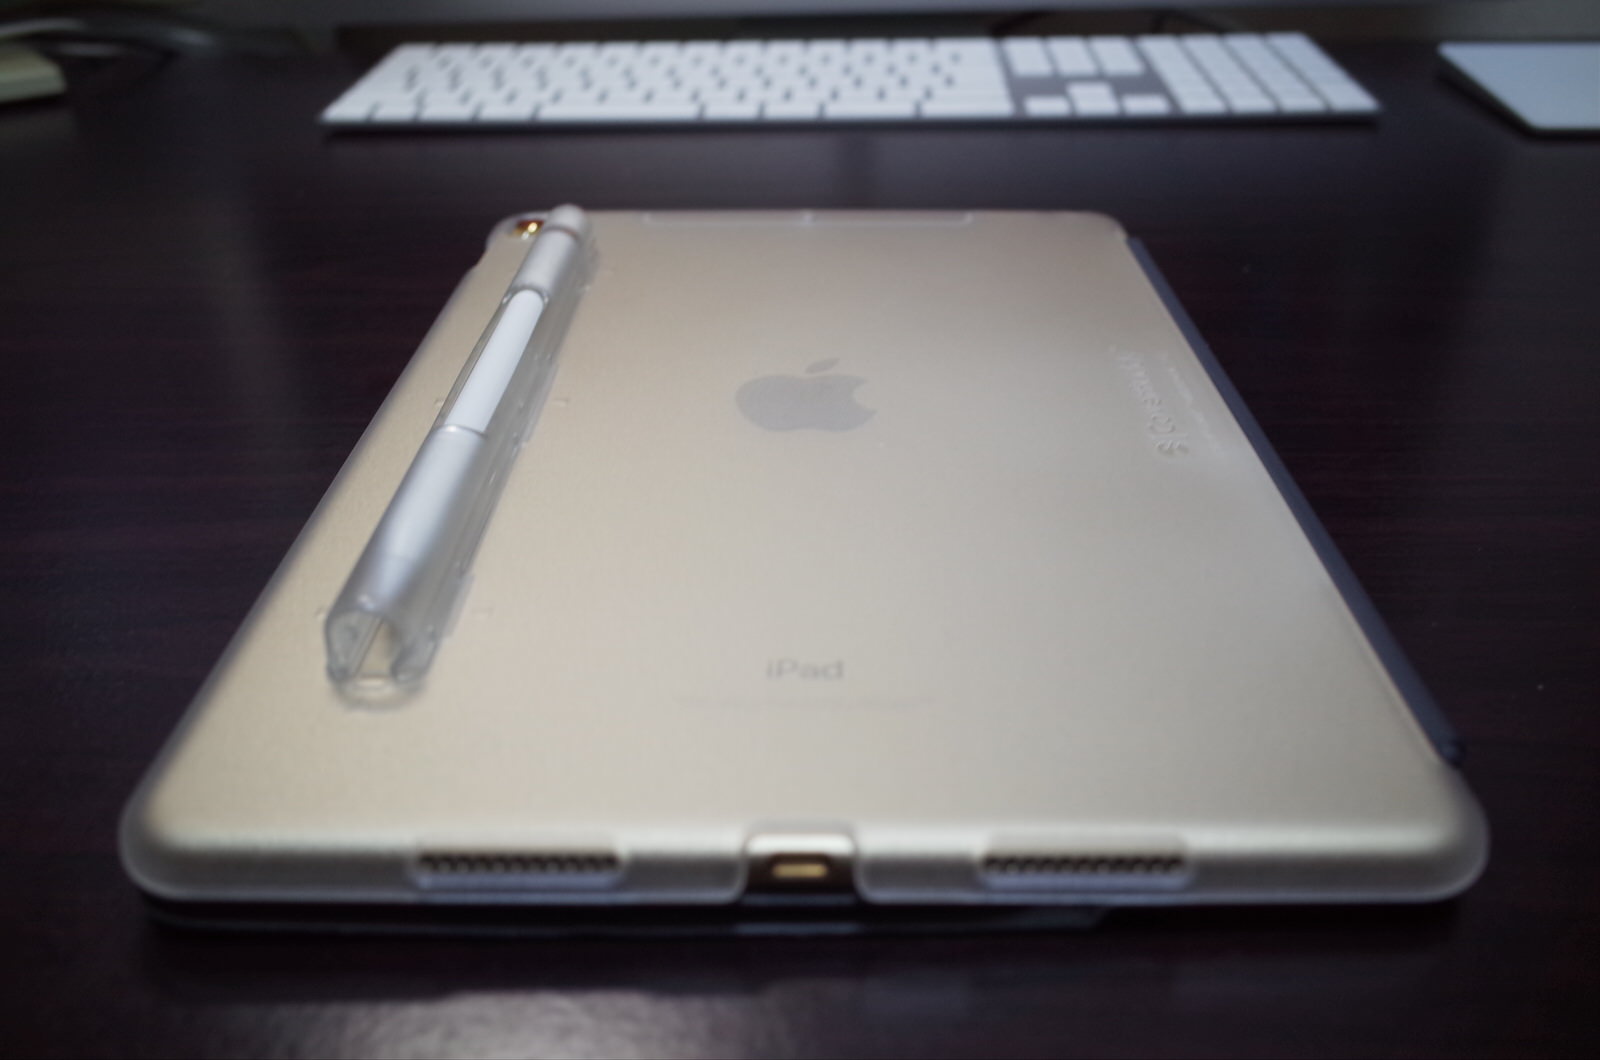 [Amazon]MacBook Pro 15 で周辺機器接続を容易にするために「AUKEY USB C ハブ 7 in 1 マルチハブ」を購入したよ